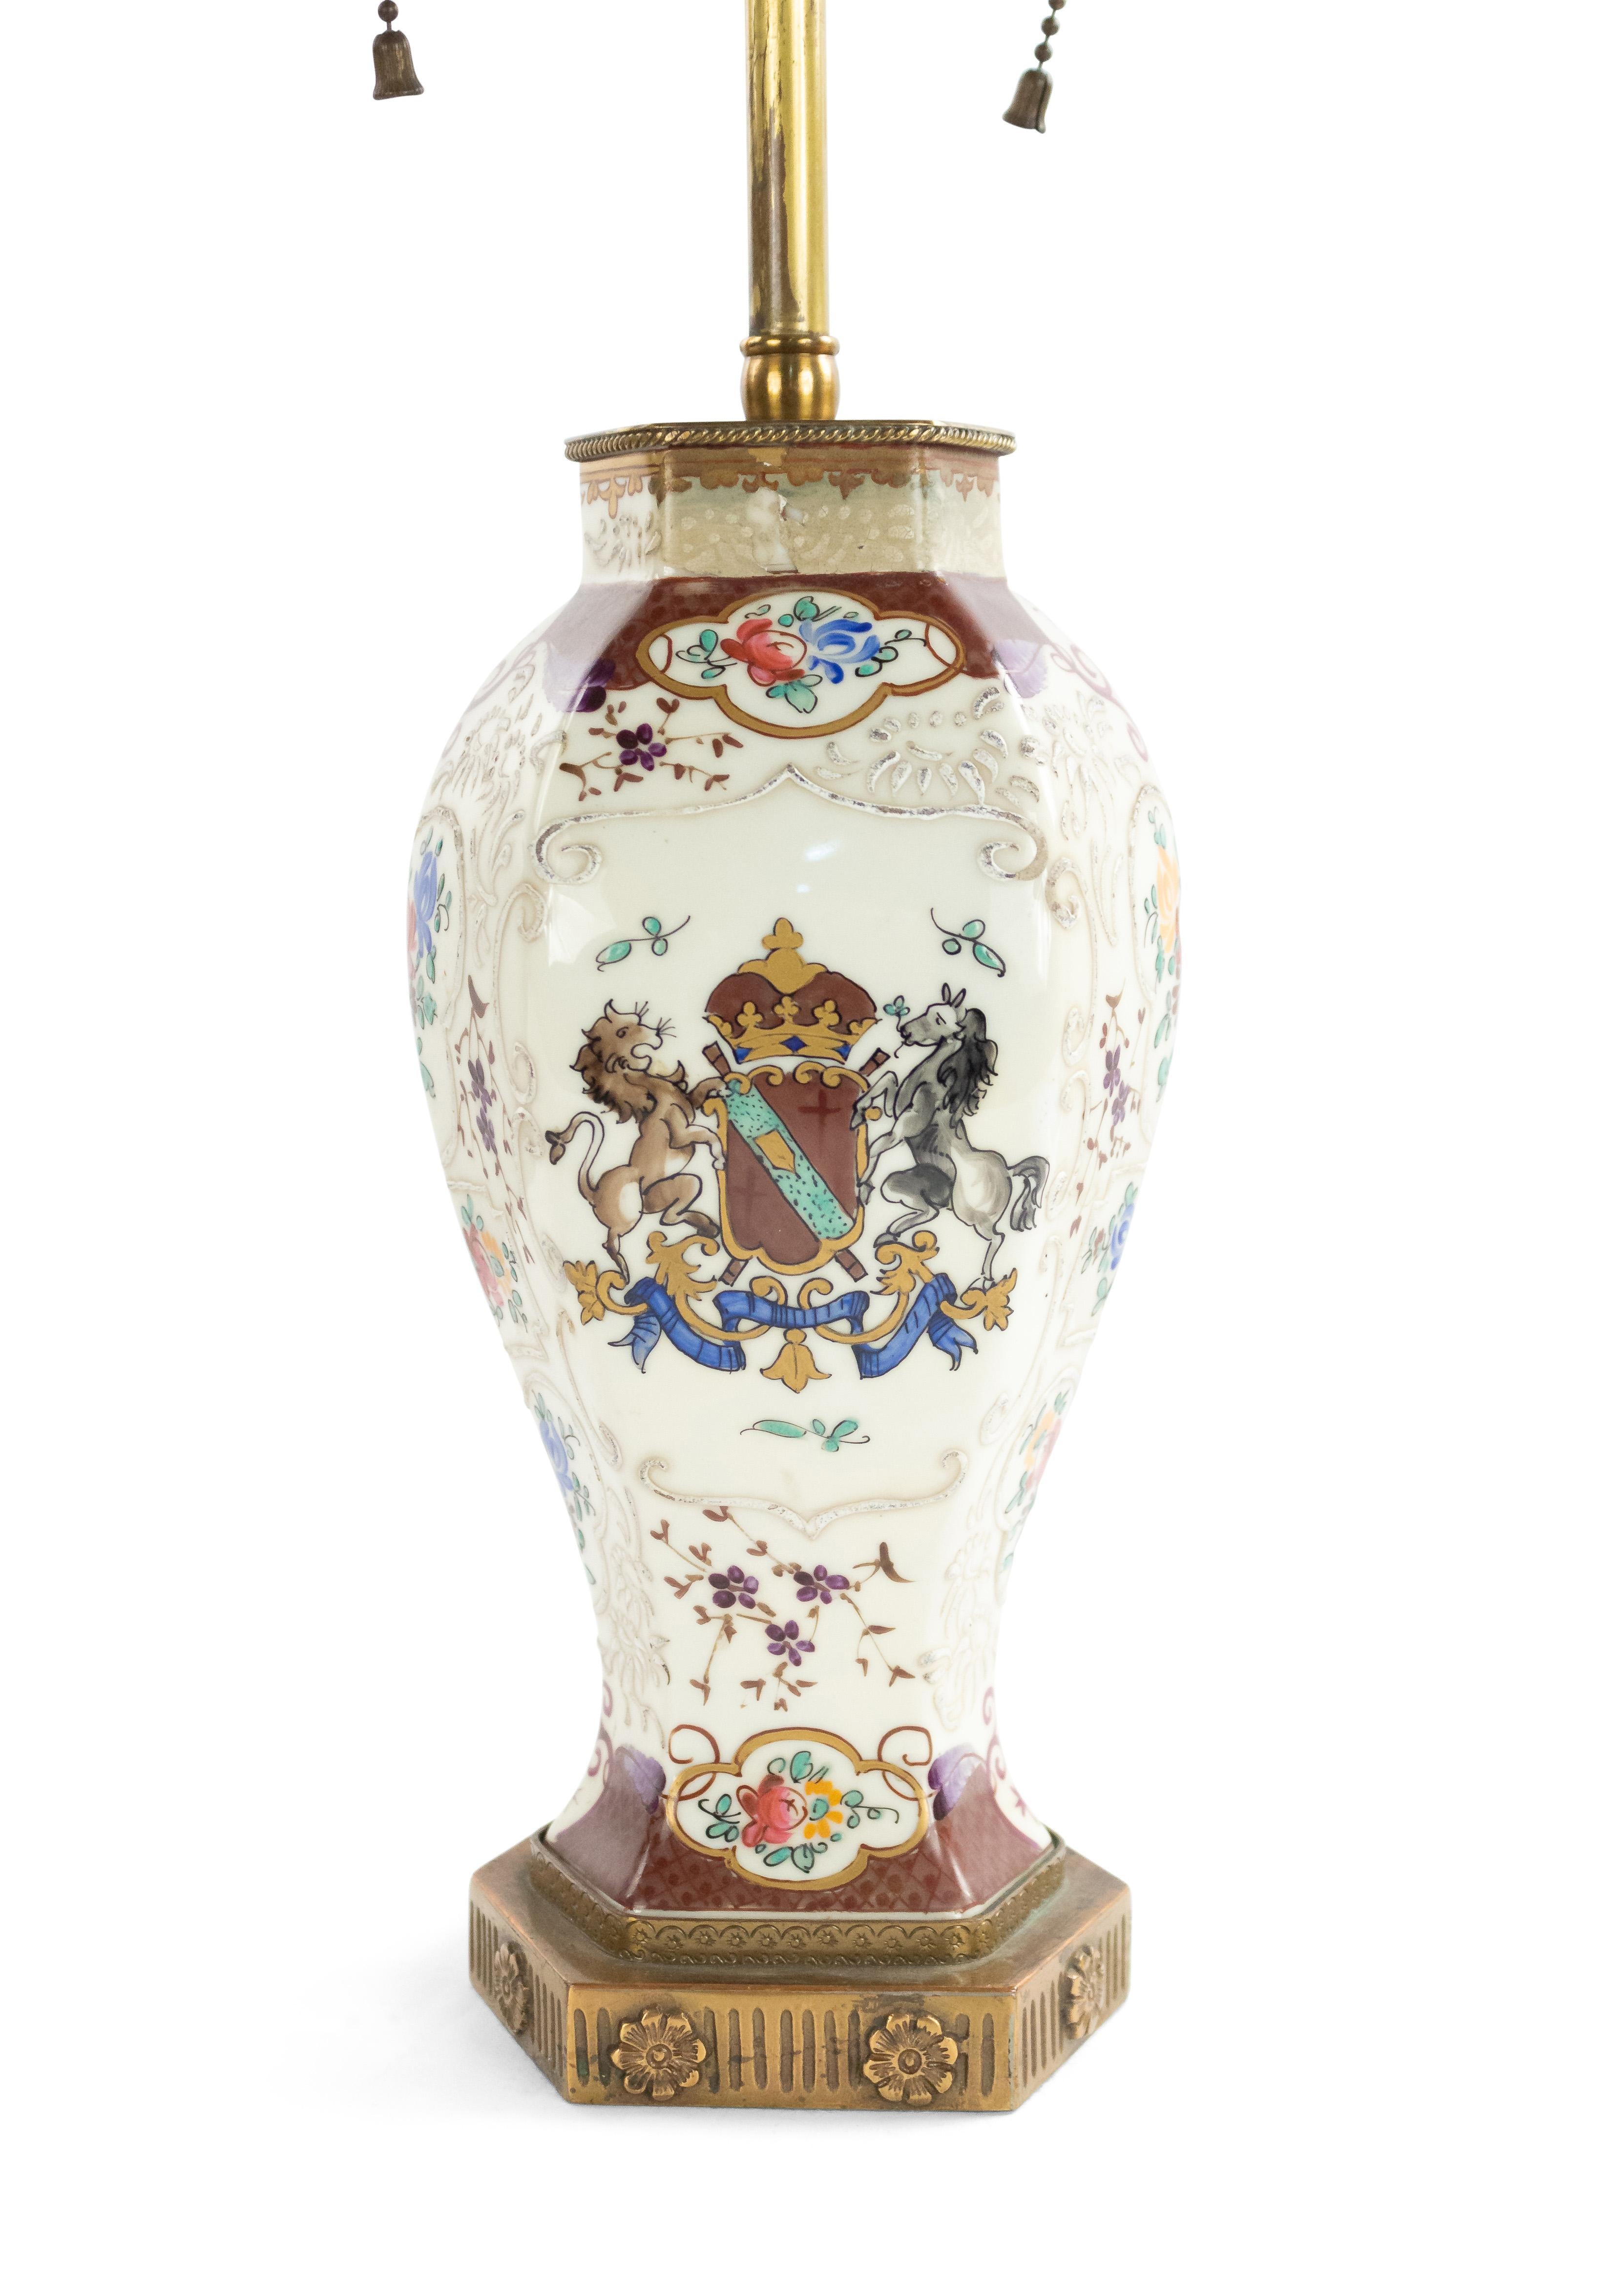 Englische, viktorianisch dekorierte Porzellan-Tischlampe mit Wappenmotiv und 6-seitigem Sockel.